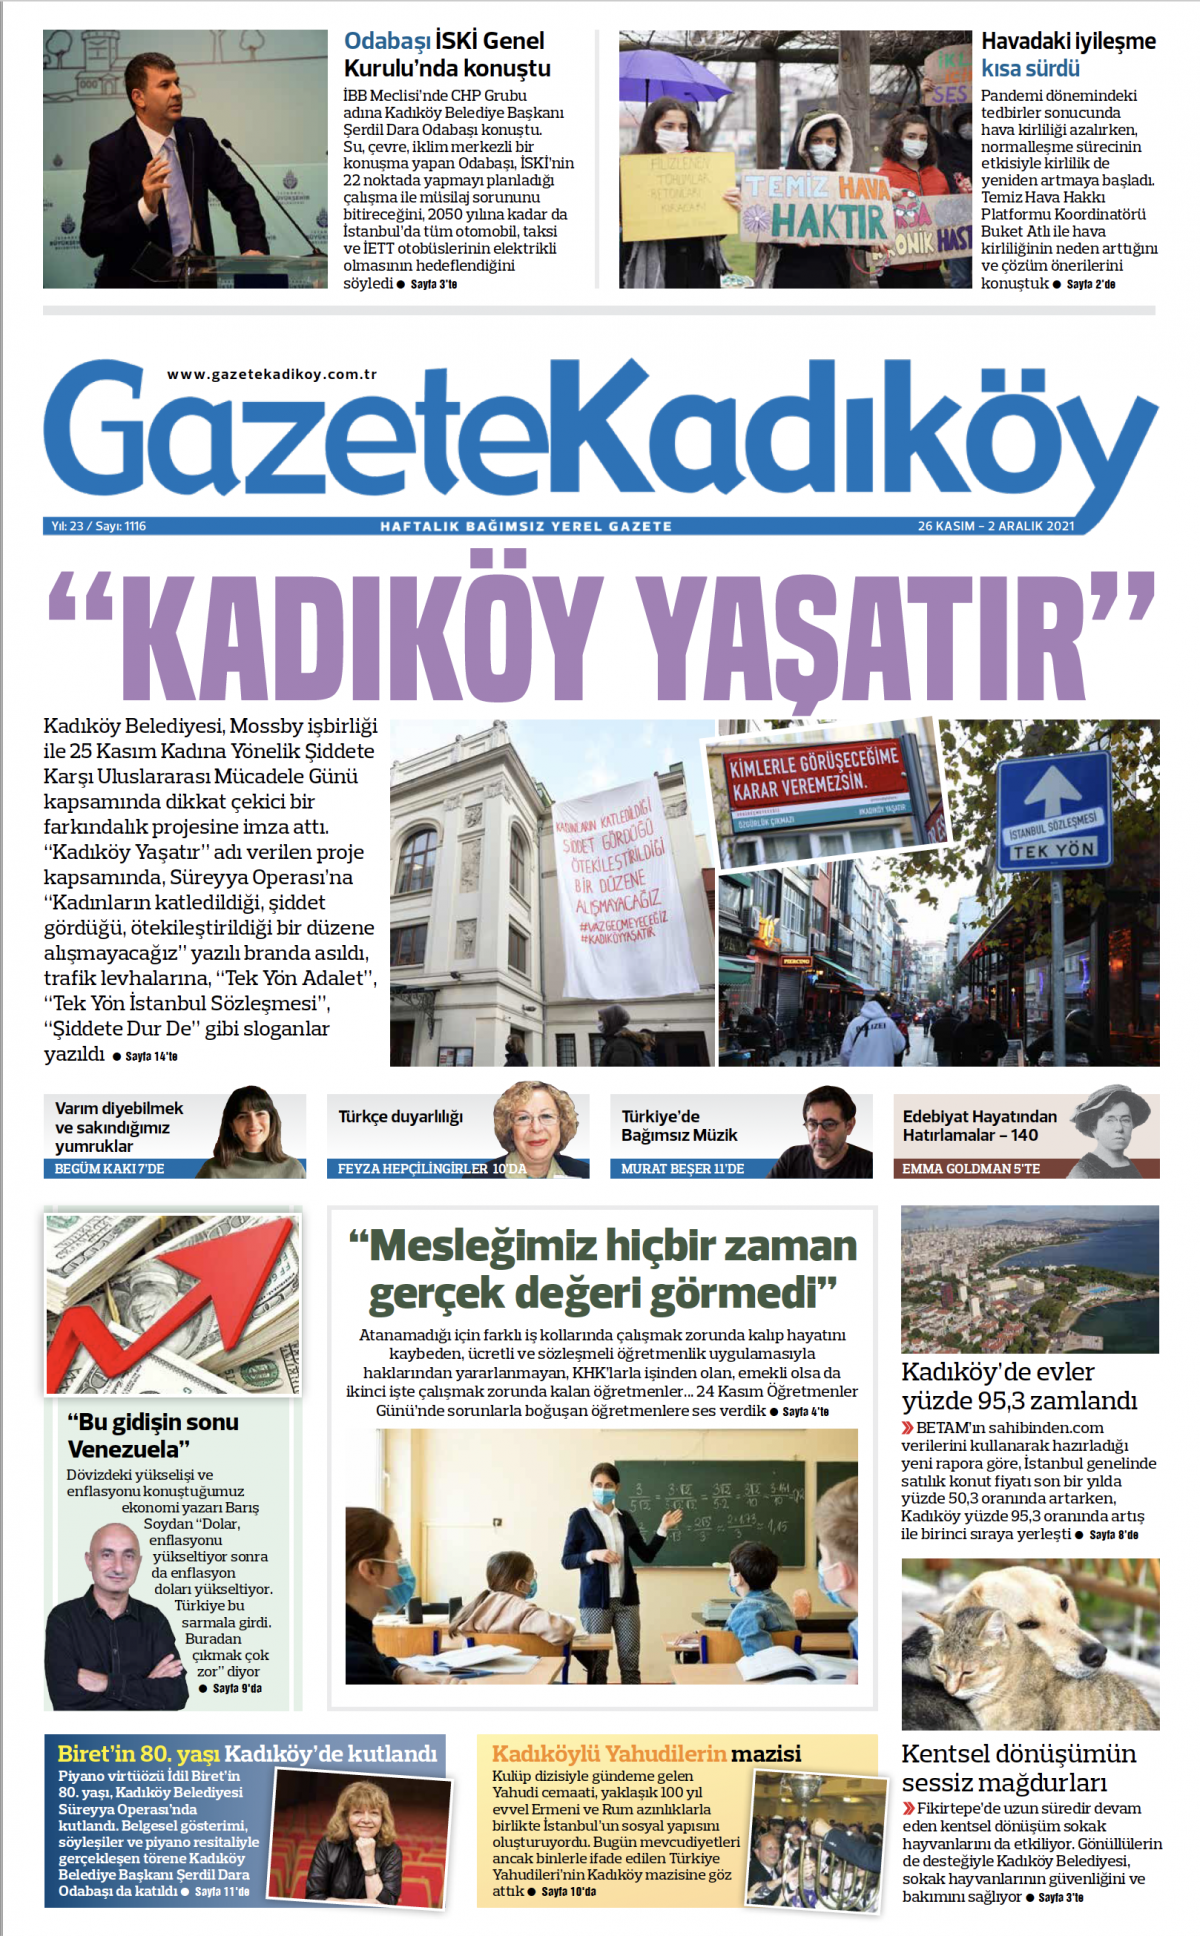 Gazete Kadıköy - 1116. Sayı